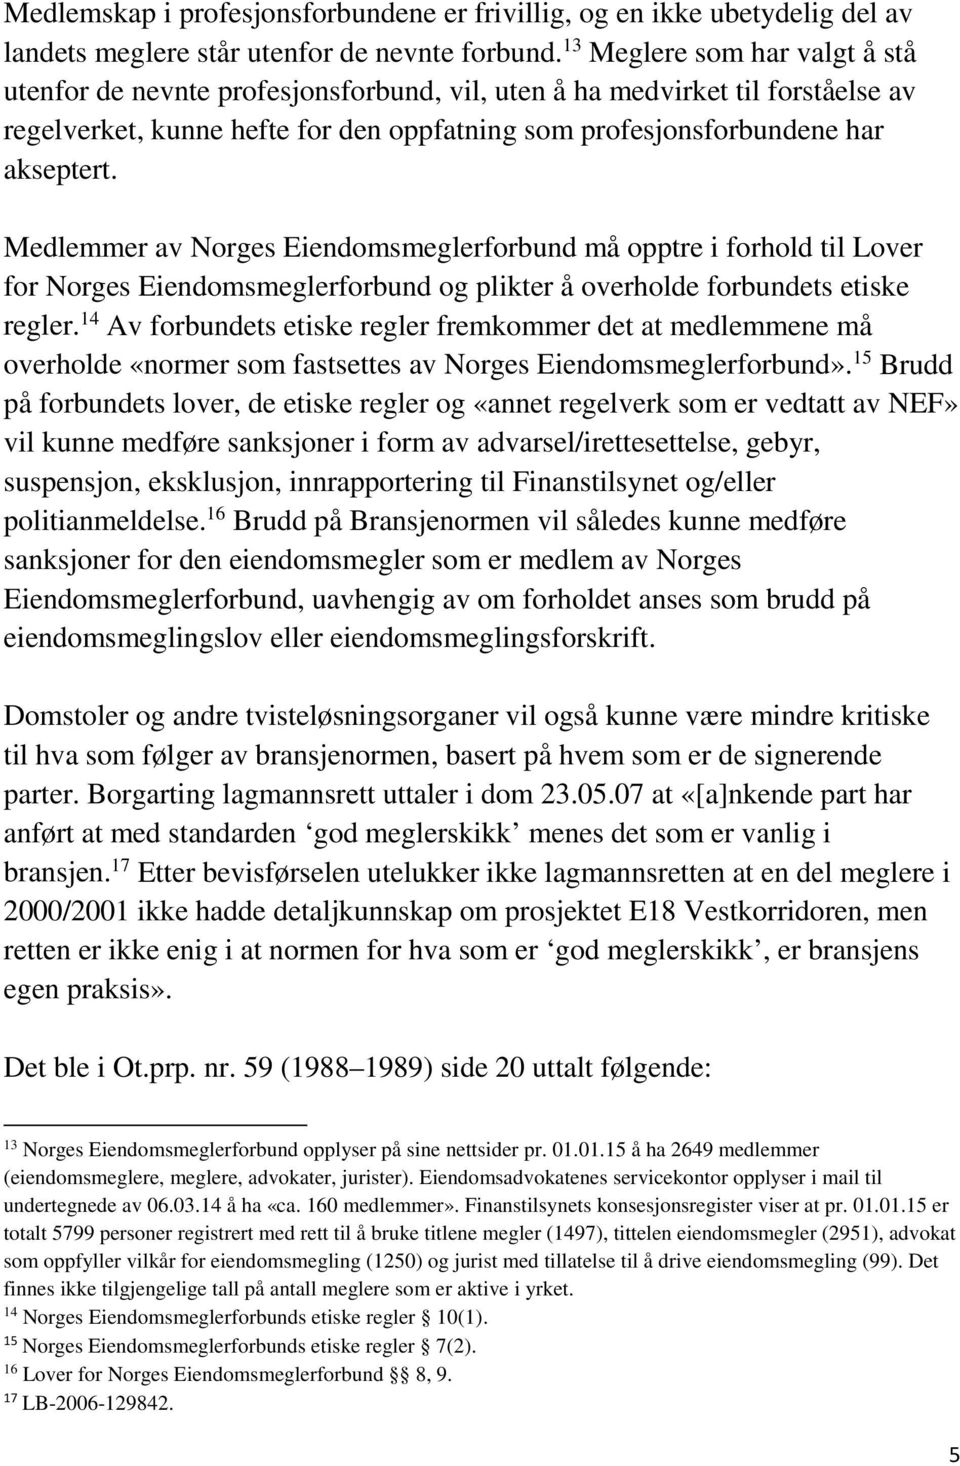 Medlemmer av Norges Eiendomsmeglerforbund må opptre i forhold til Lover for Norges Eiendomsmeglerforbund og plikter å overholde forbundets etiske regler.